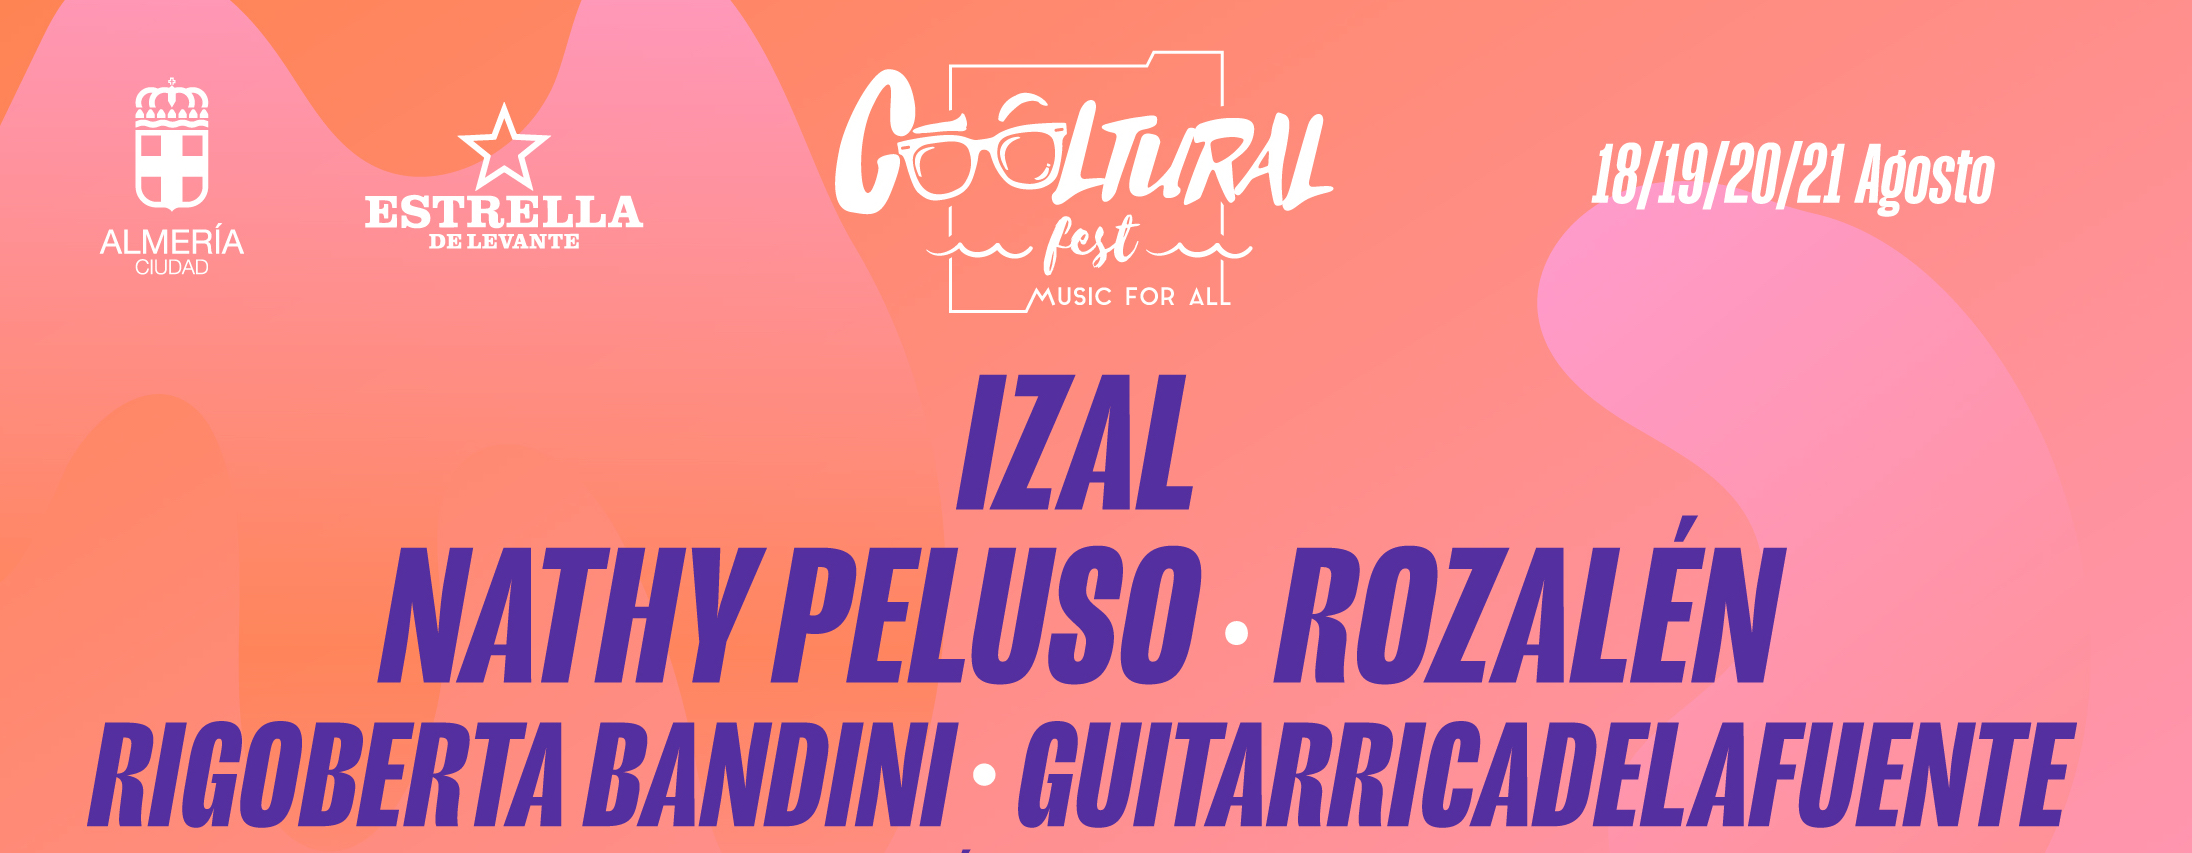 Cooltural Fest cierra el cartel de su próxima edición con la incorporación de más de quince bandas 